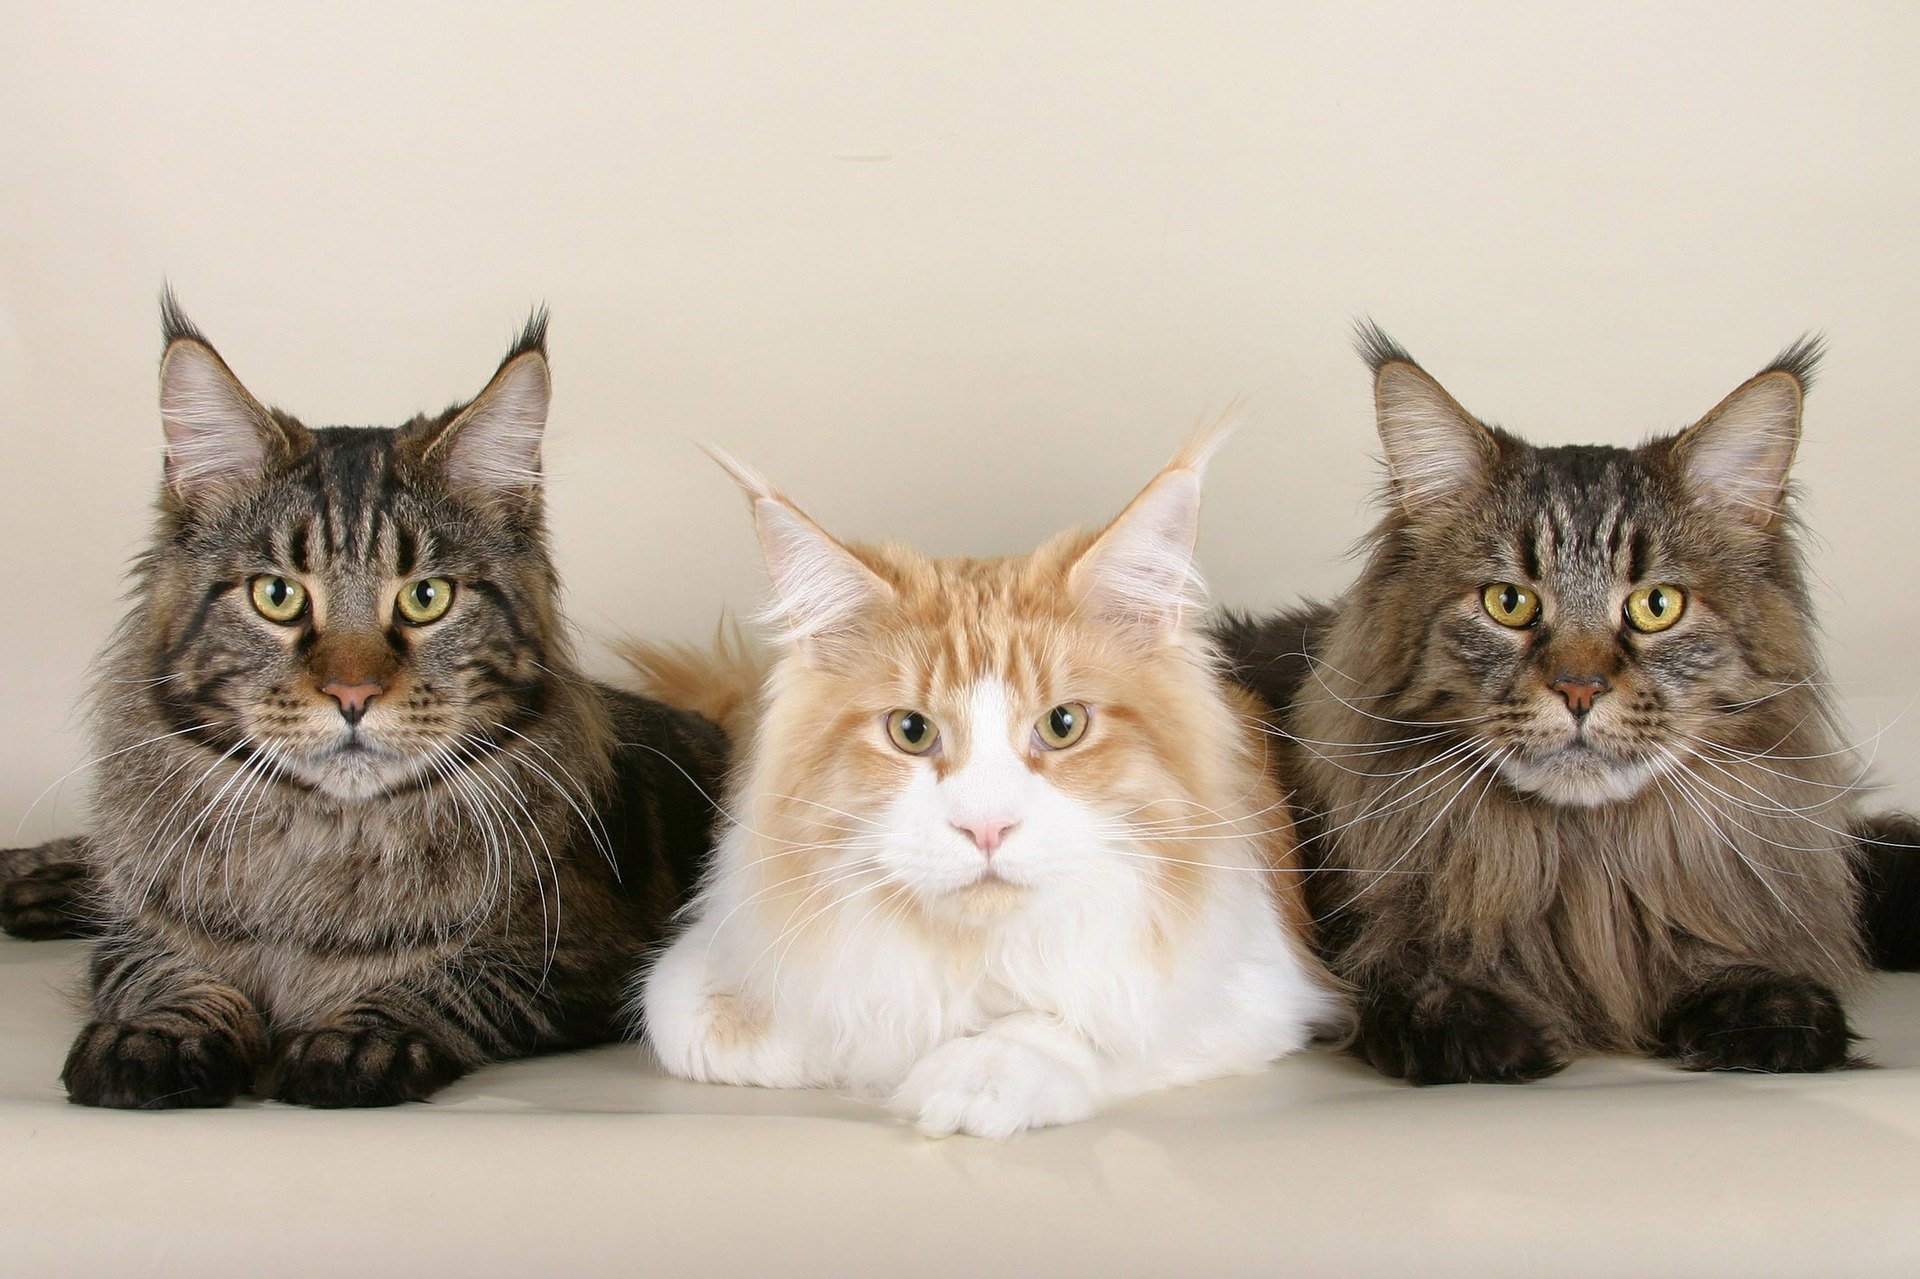 Una dintre cele mai mari pisici domestice, adica pisicile Maine Coon au extrem de multi adepti. Sunt la mare cautare, insa cum sa avem grija de Maine Coon corect?